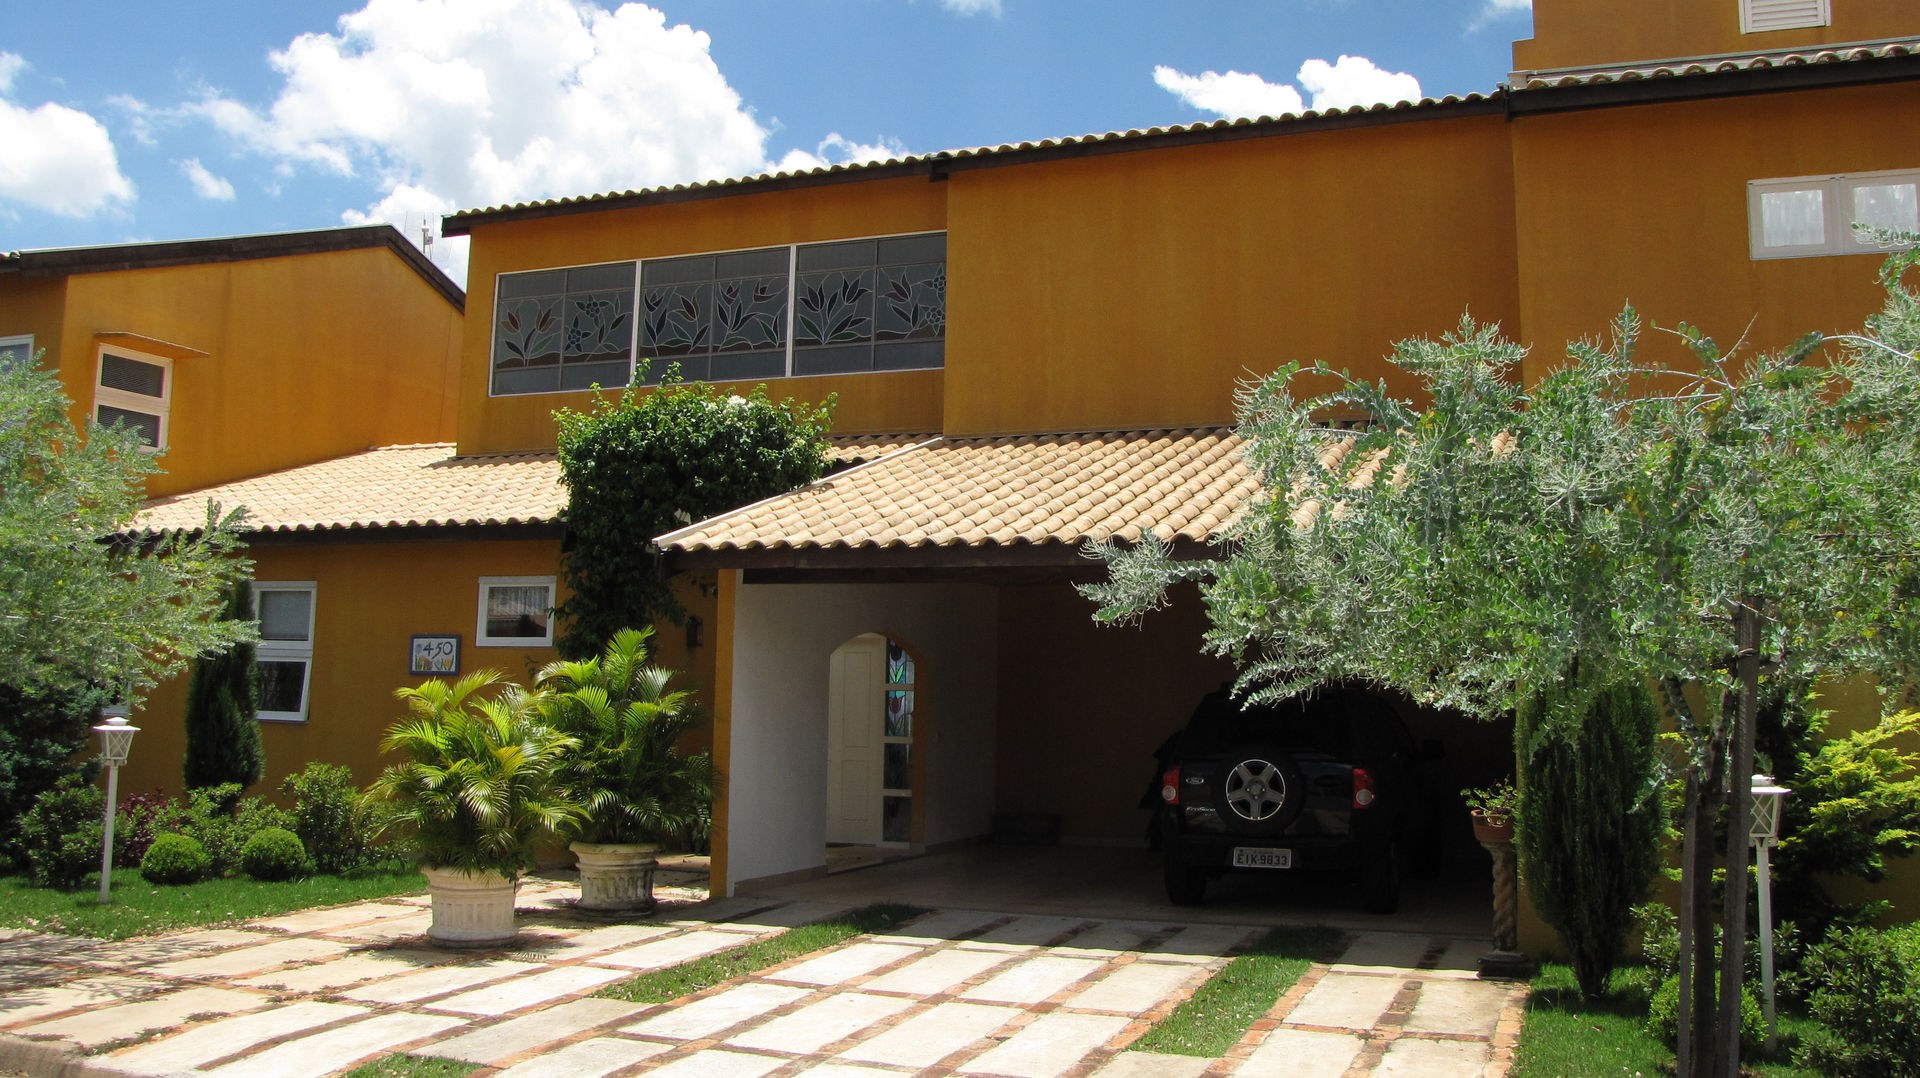 Residência em São Carlos, JMN arquitetura JMN arquitetura Terrace house